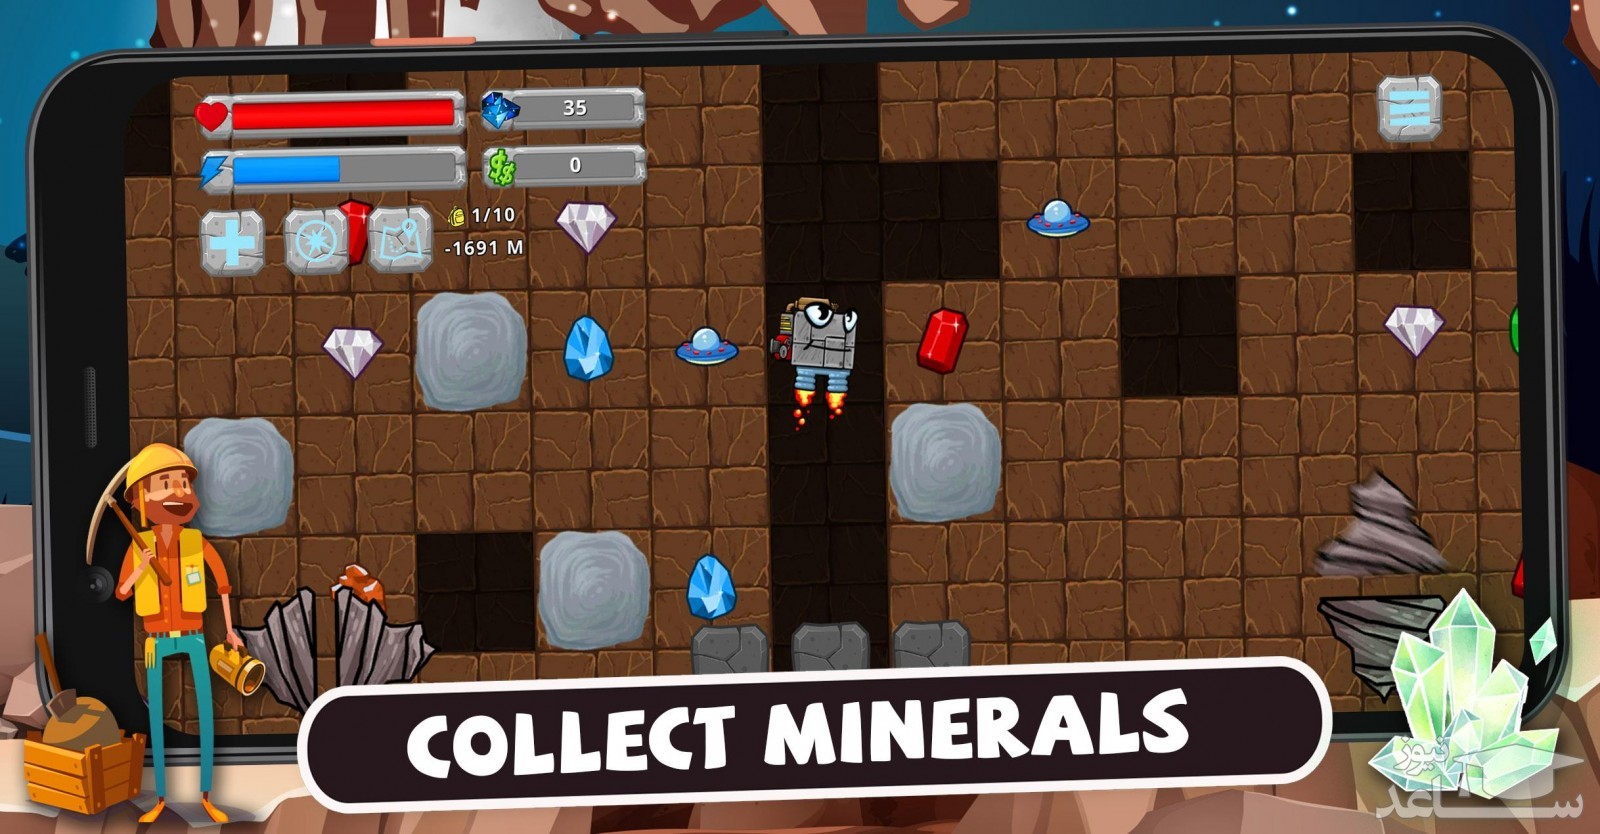  بازی Digger Machine: dig and find minerals